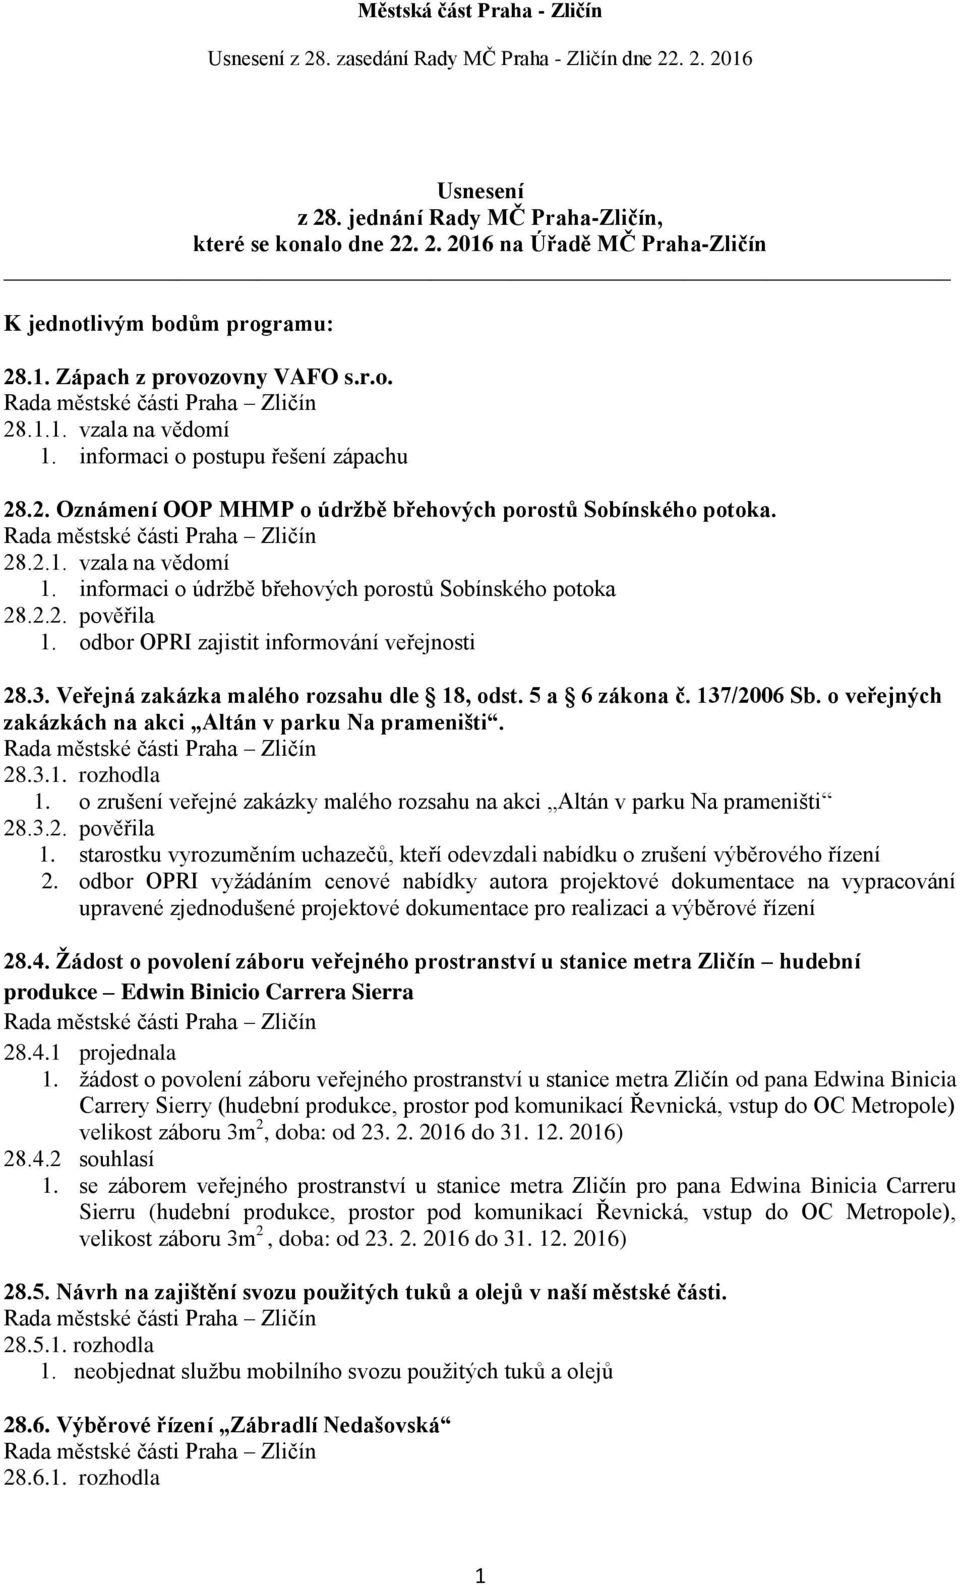 odbor OPRI zajistit informování veřejnosti 28.3. Veřejná zakázka malého rozsahu dle 18, odst. 5 a 6 zákona č. 137/2006 Sb. o veřejných zakázkách na akci Altán v parku Na prameništi. 28.3.1. rozhodla 1.